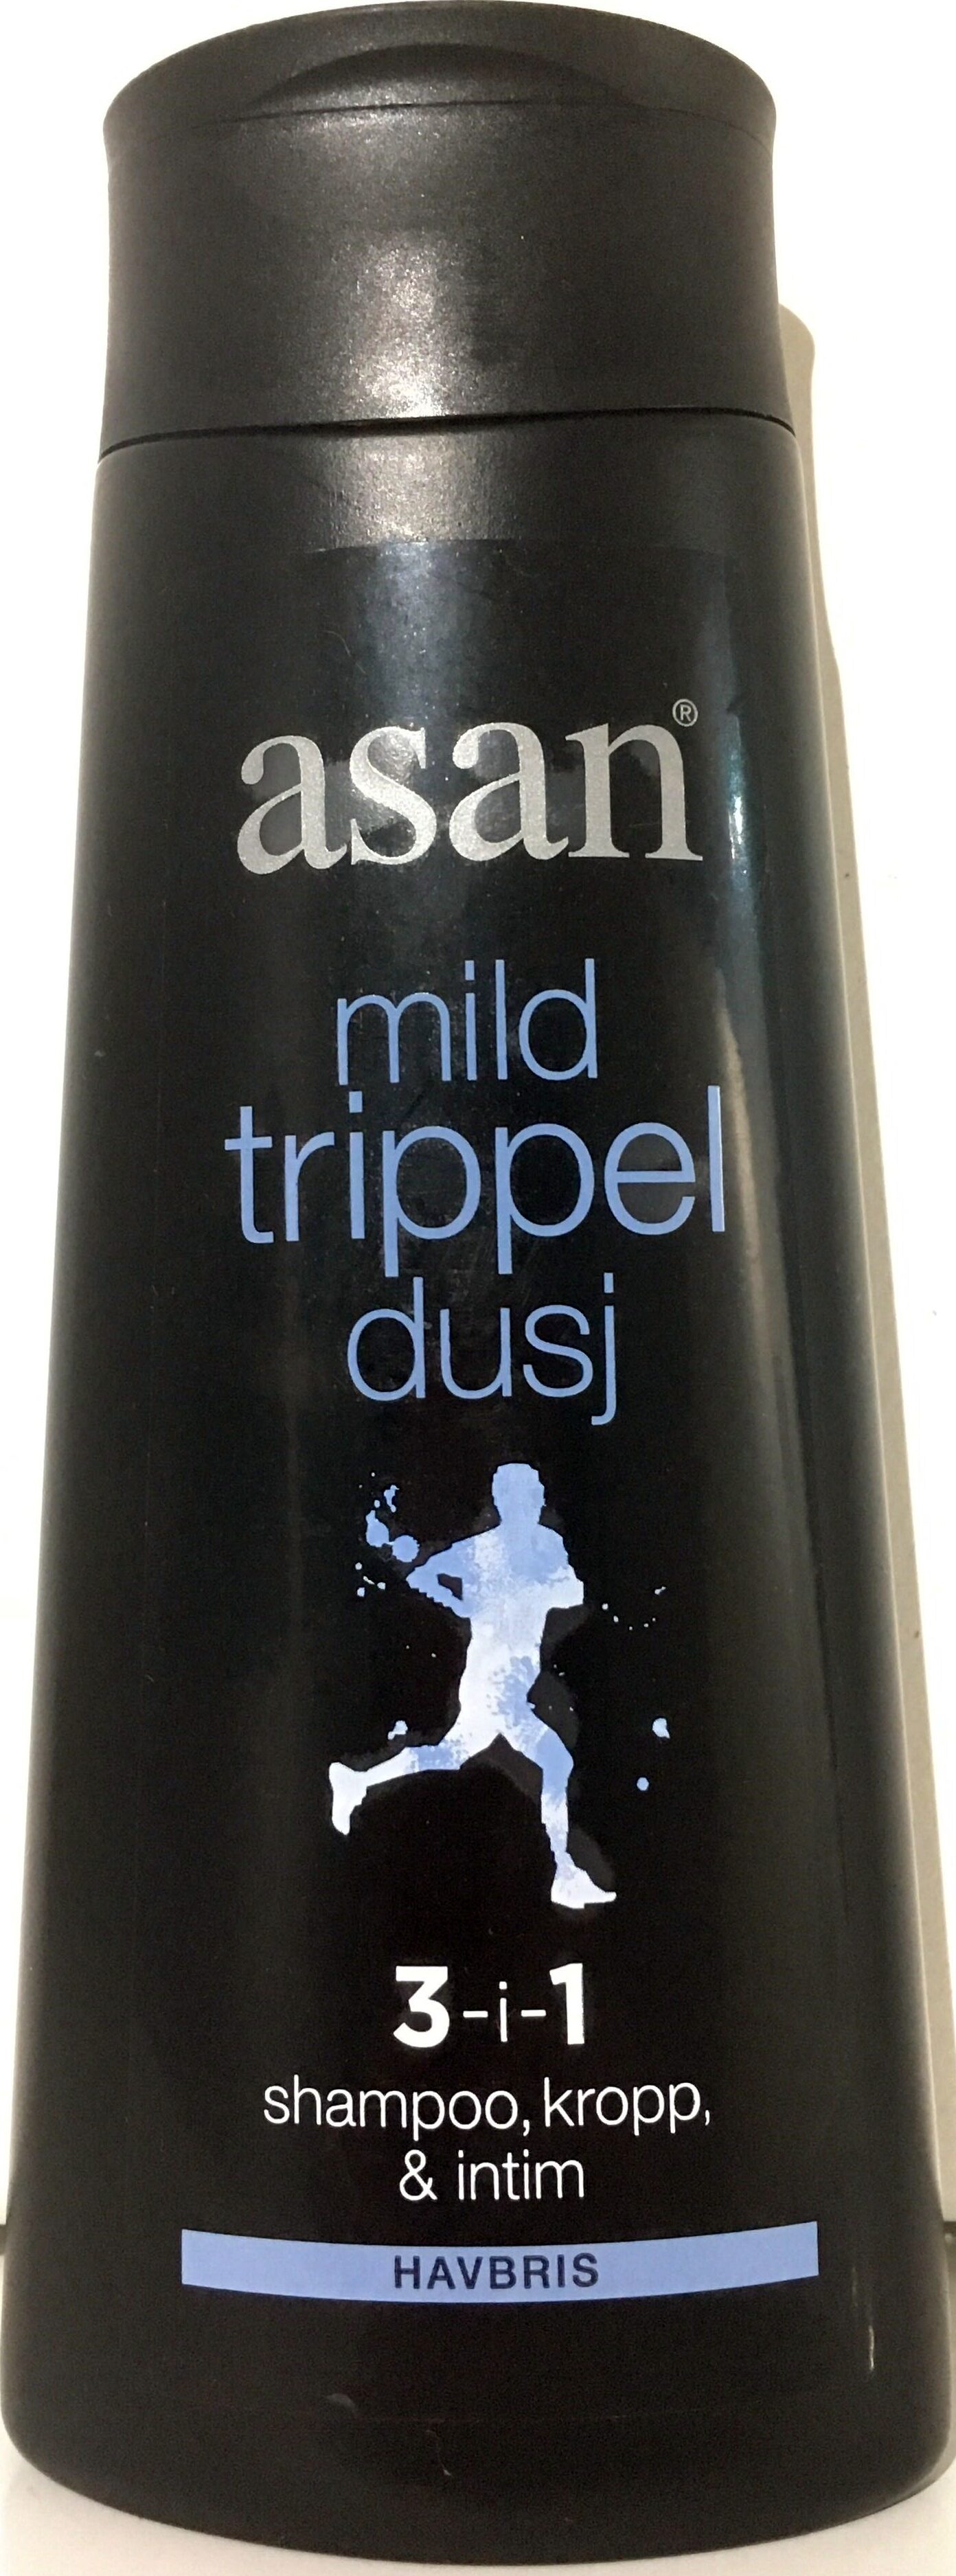 mild trippel dusj - Produit - nb